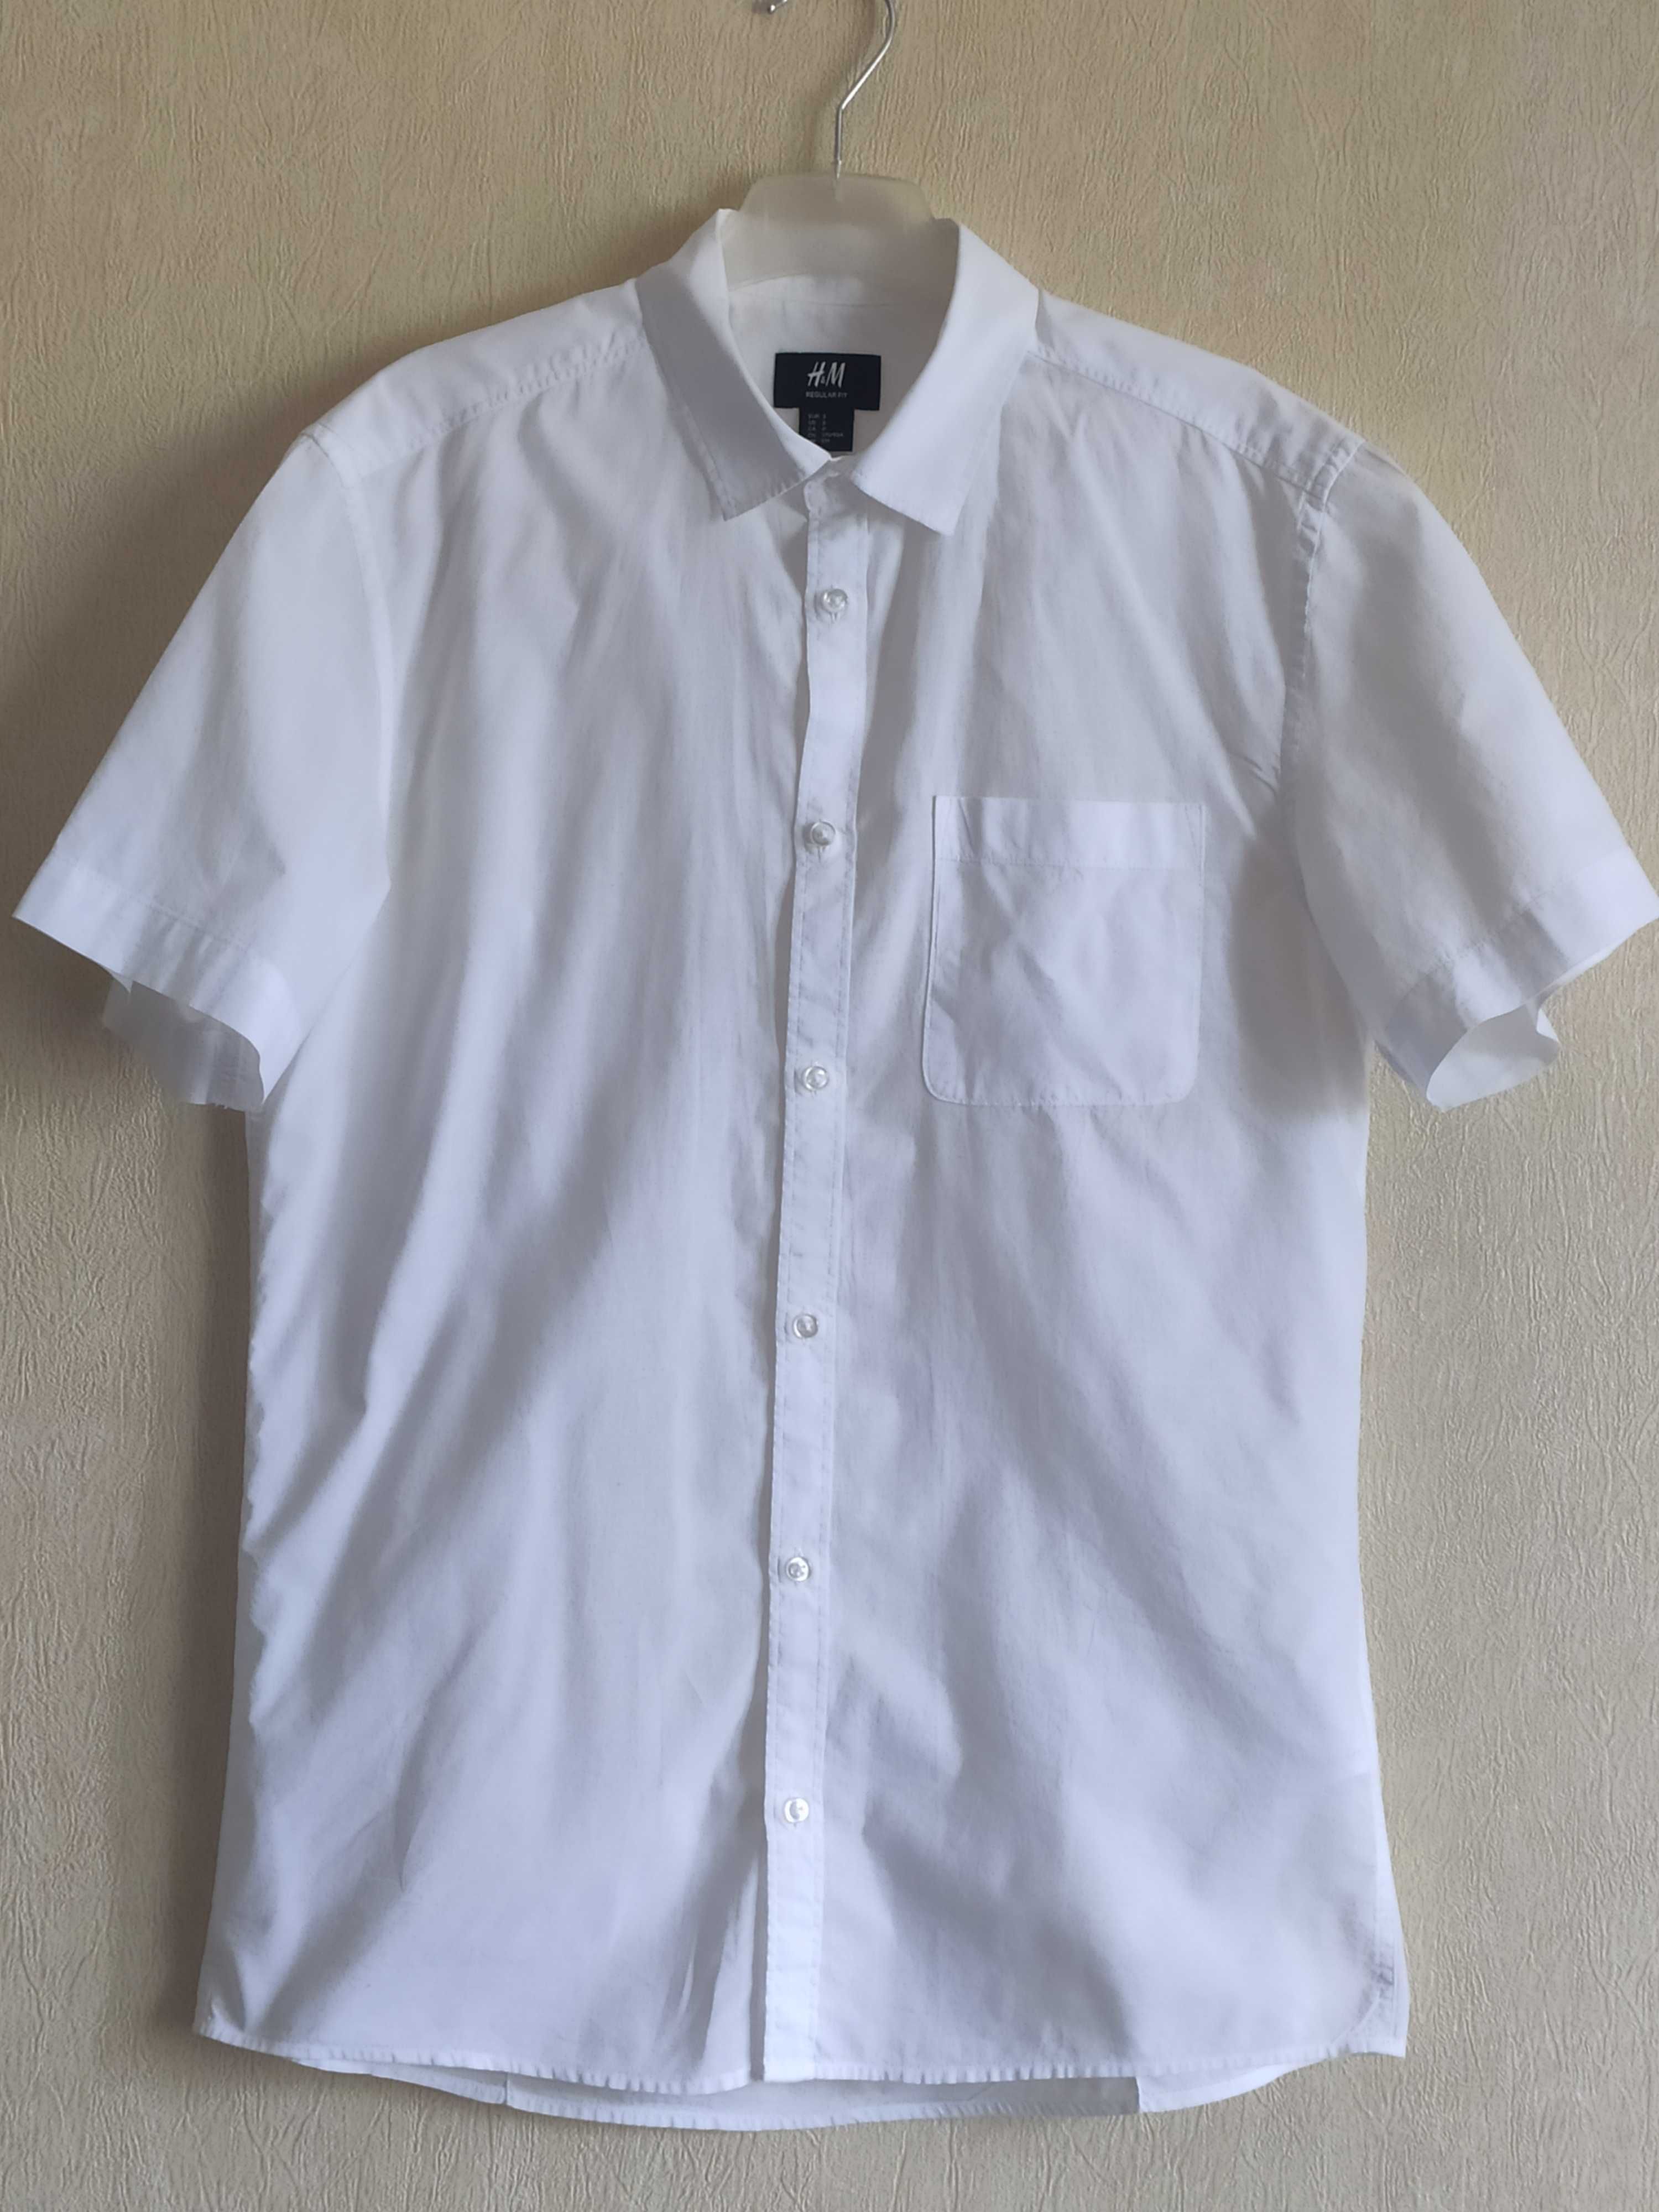 Рубашка мужская H&M с коротким рукавом размер S